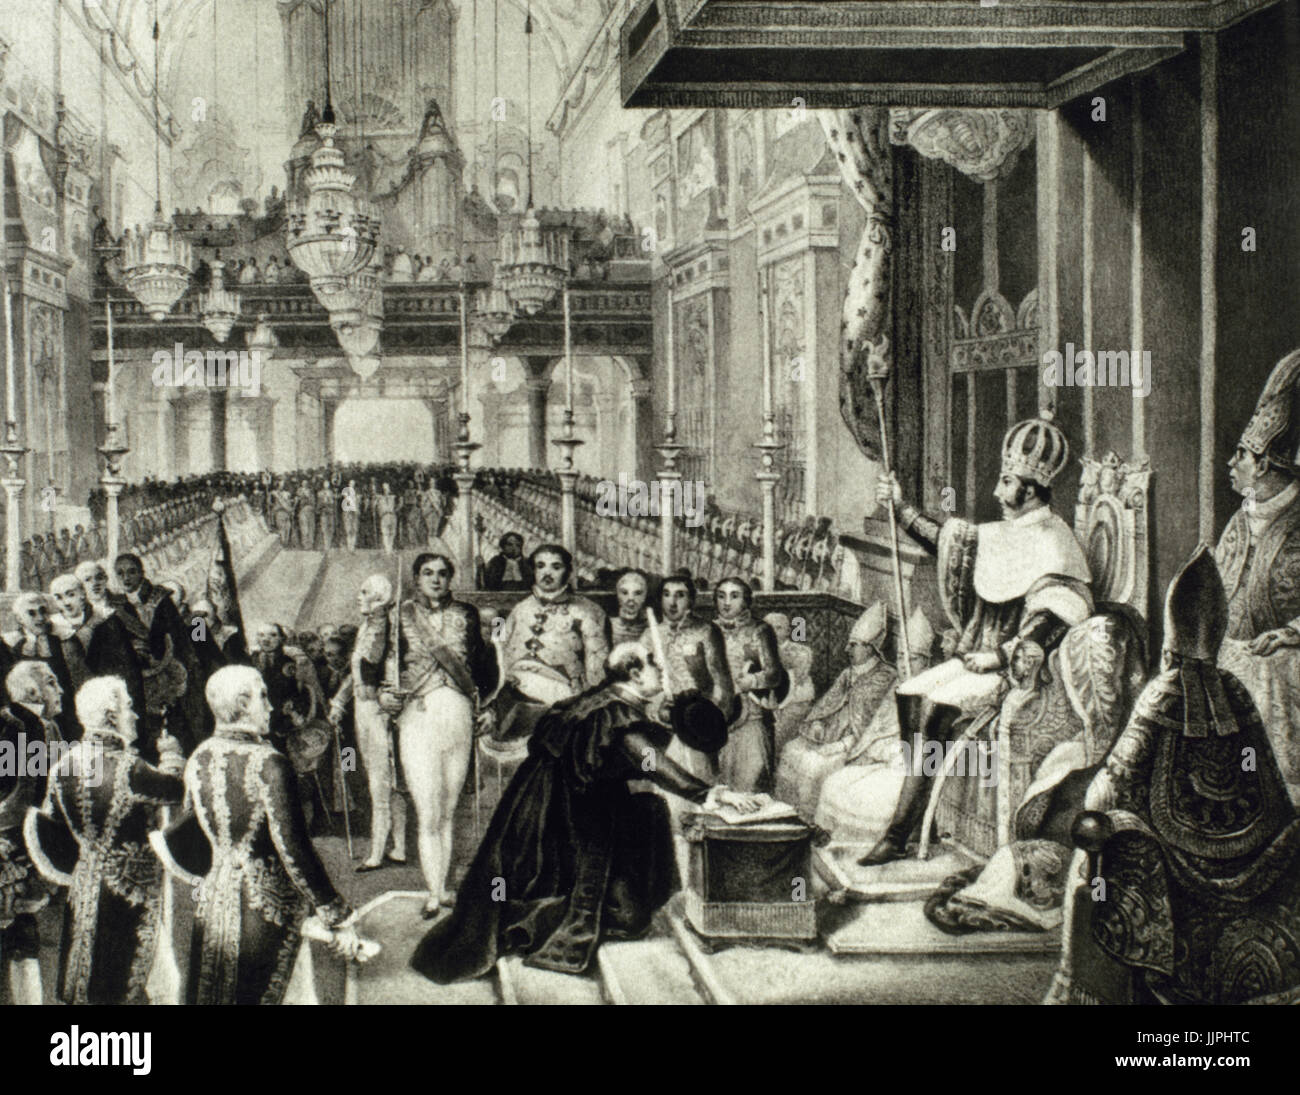 Pedro I du Brésil et de l'IV de Portugal (1798-1834). Empereur du Brésil et le roi du Portugal. La cérémonie de couronnement de Don Pedro célébrée à Rio de Janeiro, le 1 décembre 1822. La gravure. Banque D'Images